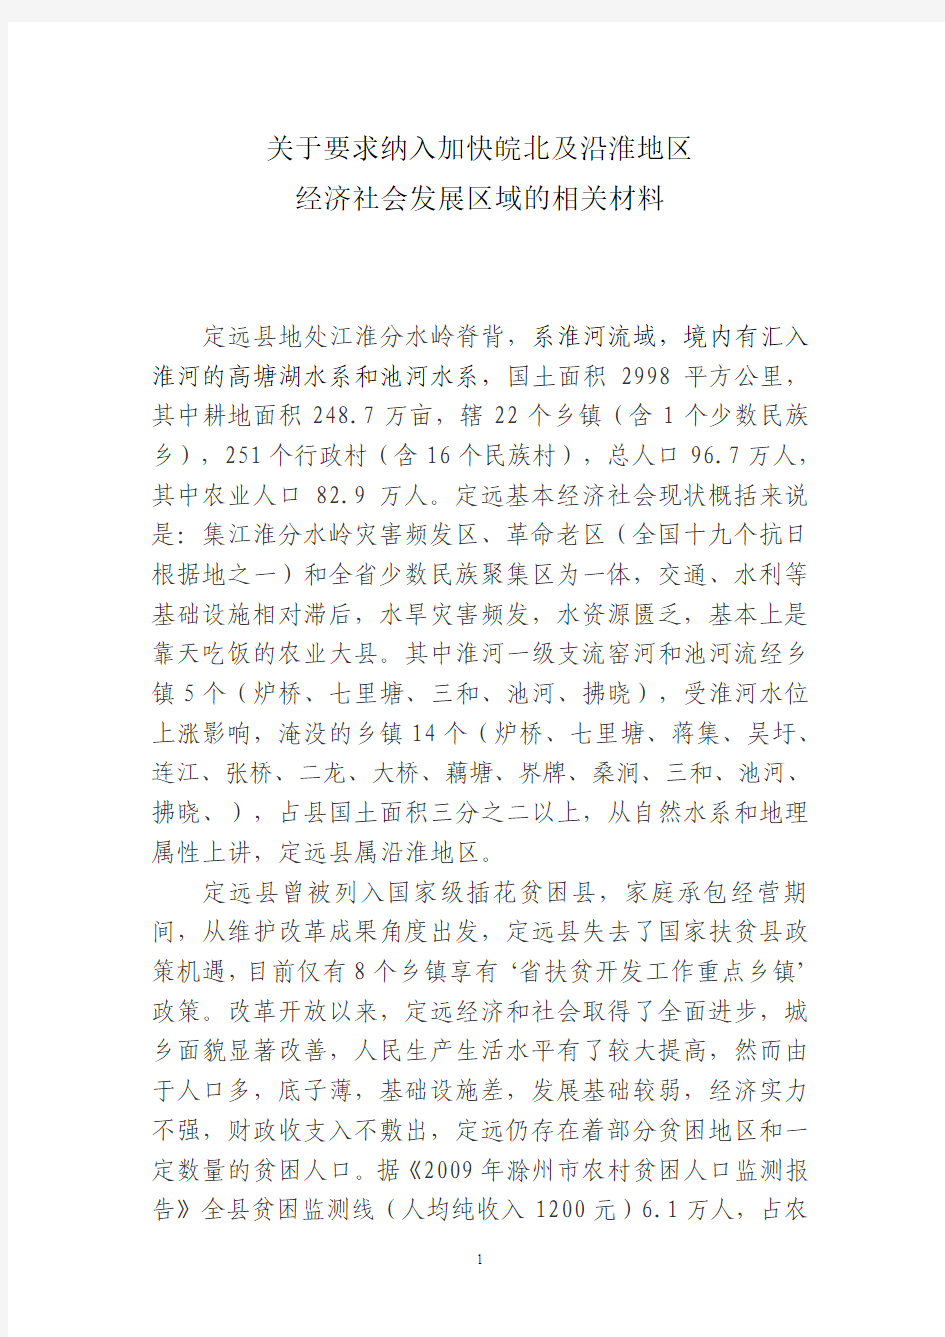 关于要求将定远县列入皖北经济发展区(2010.9.28)